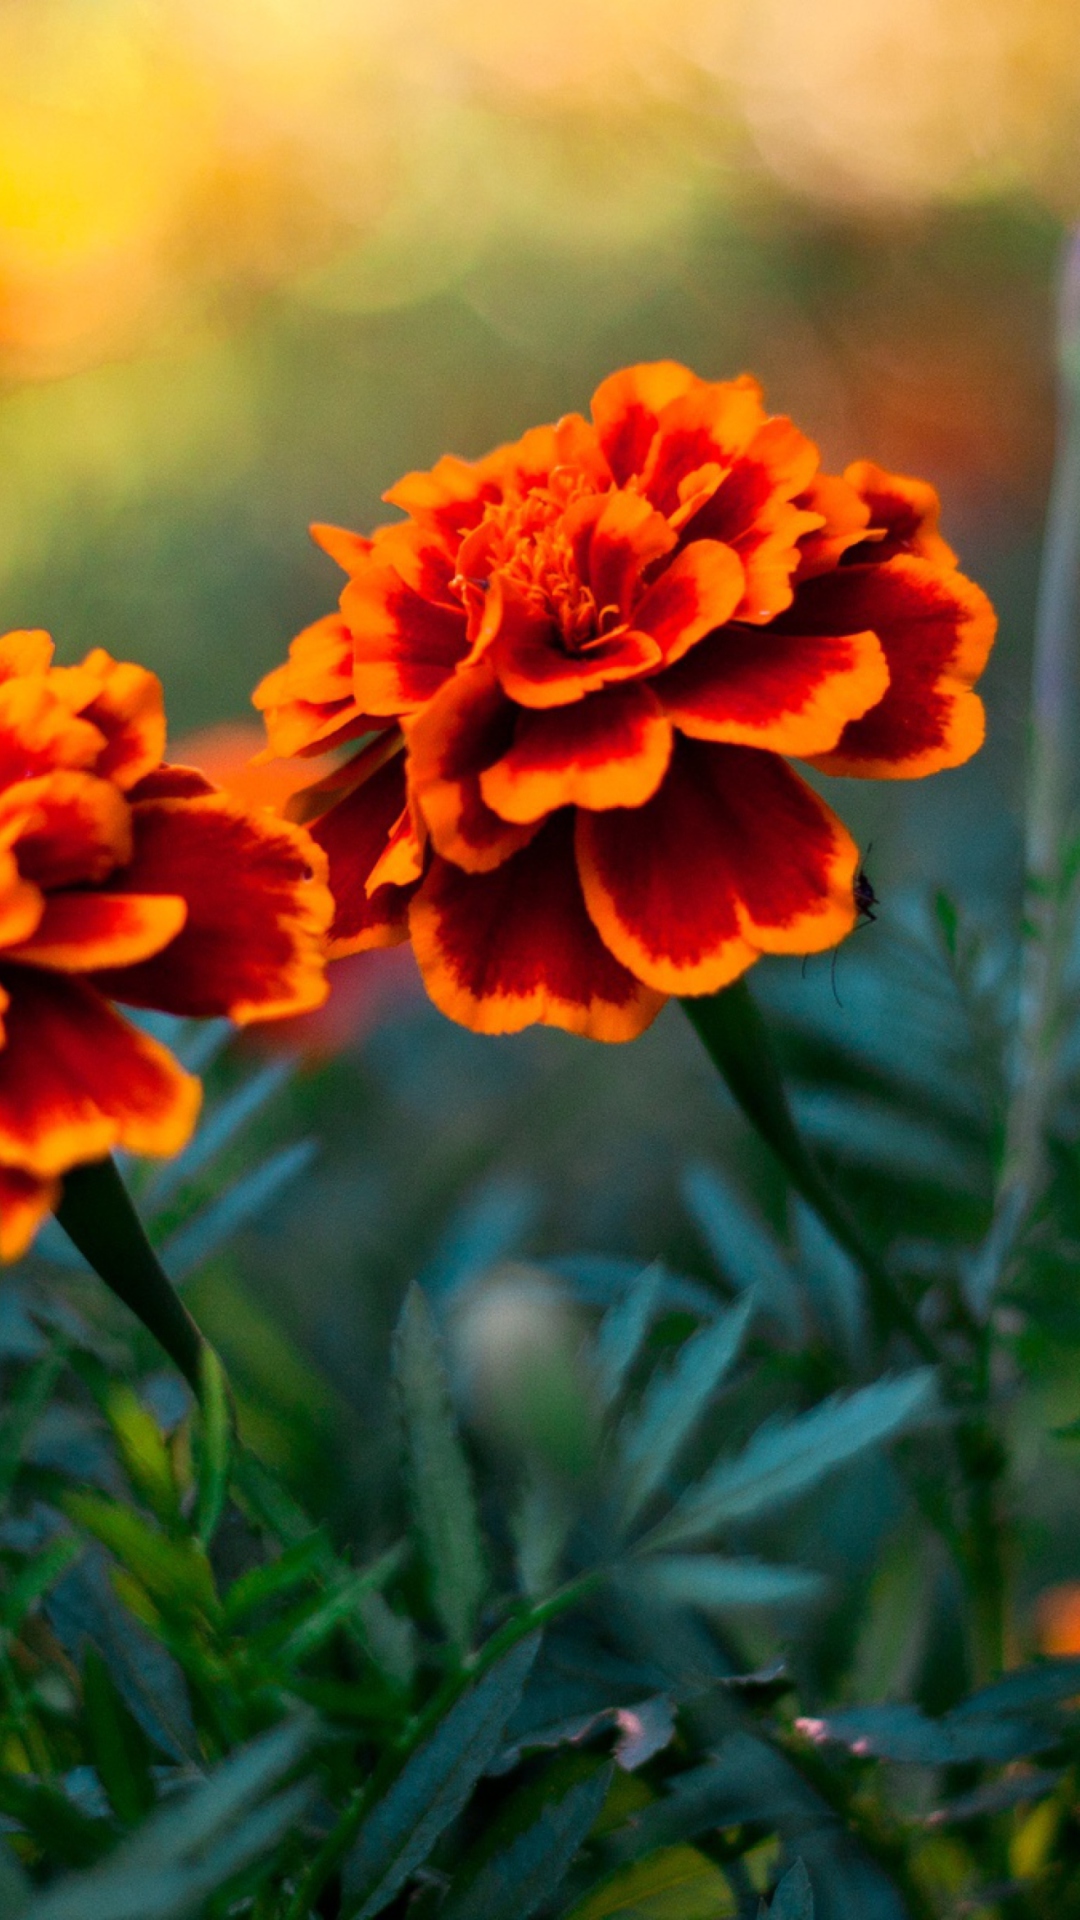 Обои Orange Flower Pair 1080x1920